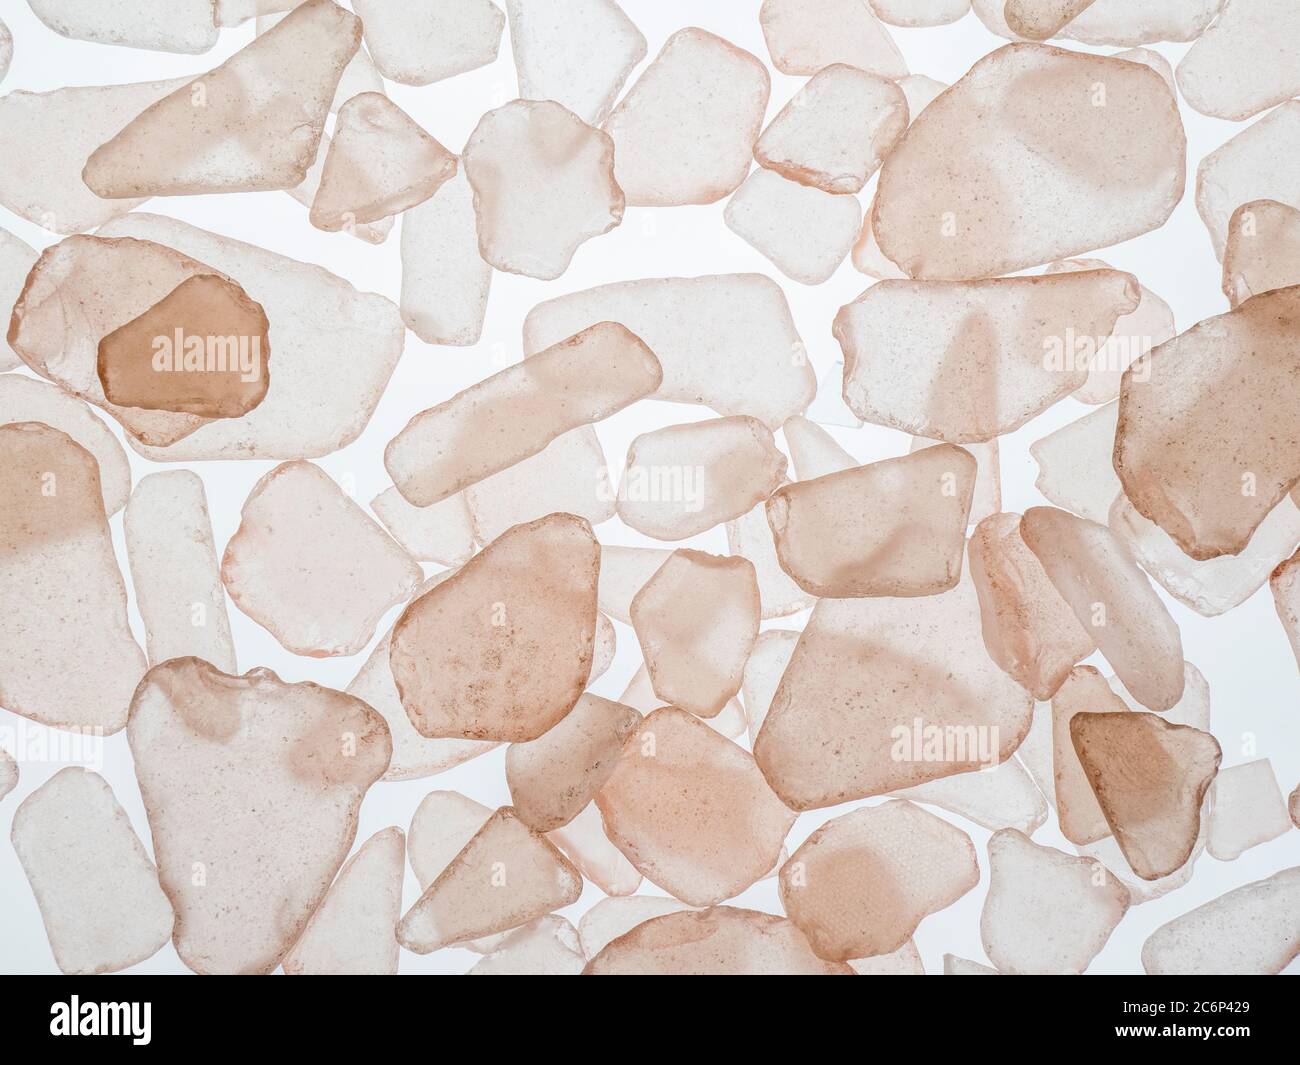 Cadre de remplissage en gros plan de copeaux de verre de mer rose translucide sur fond blanc Banque D'Images